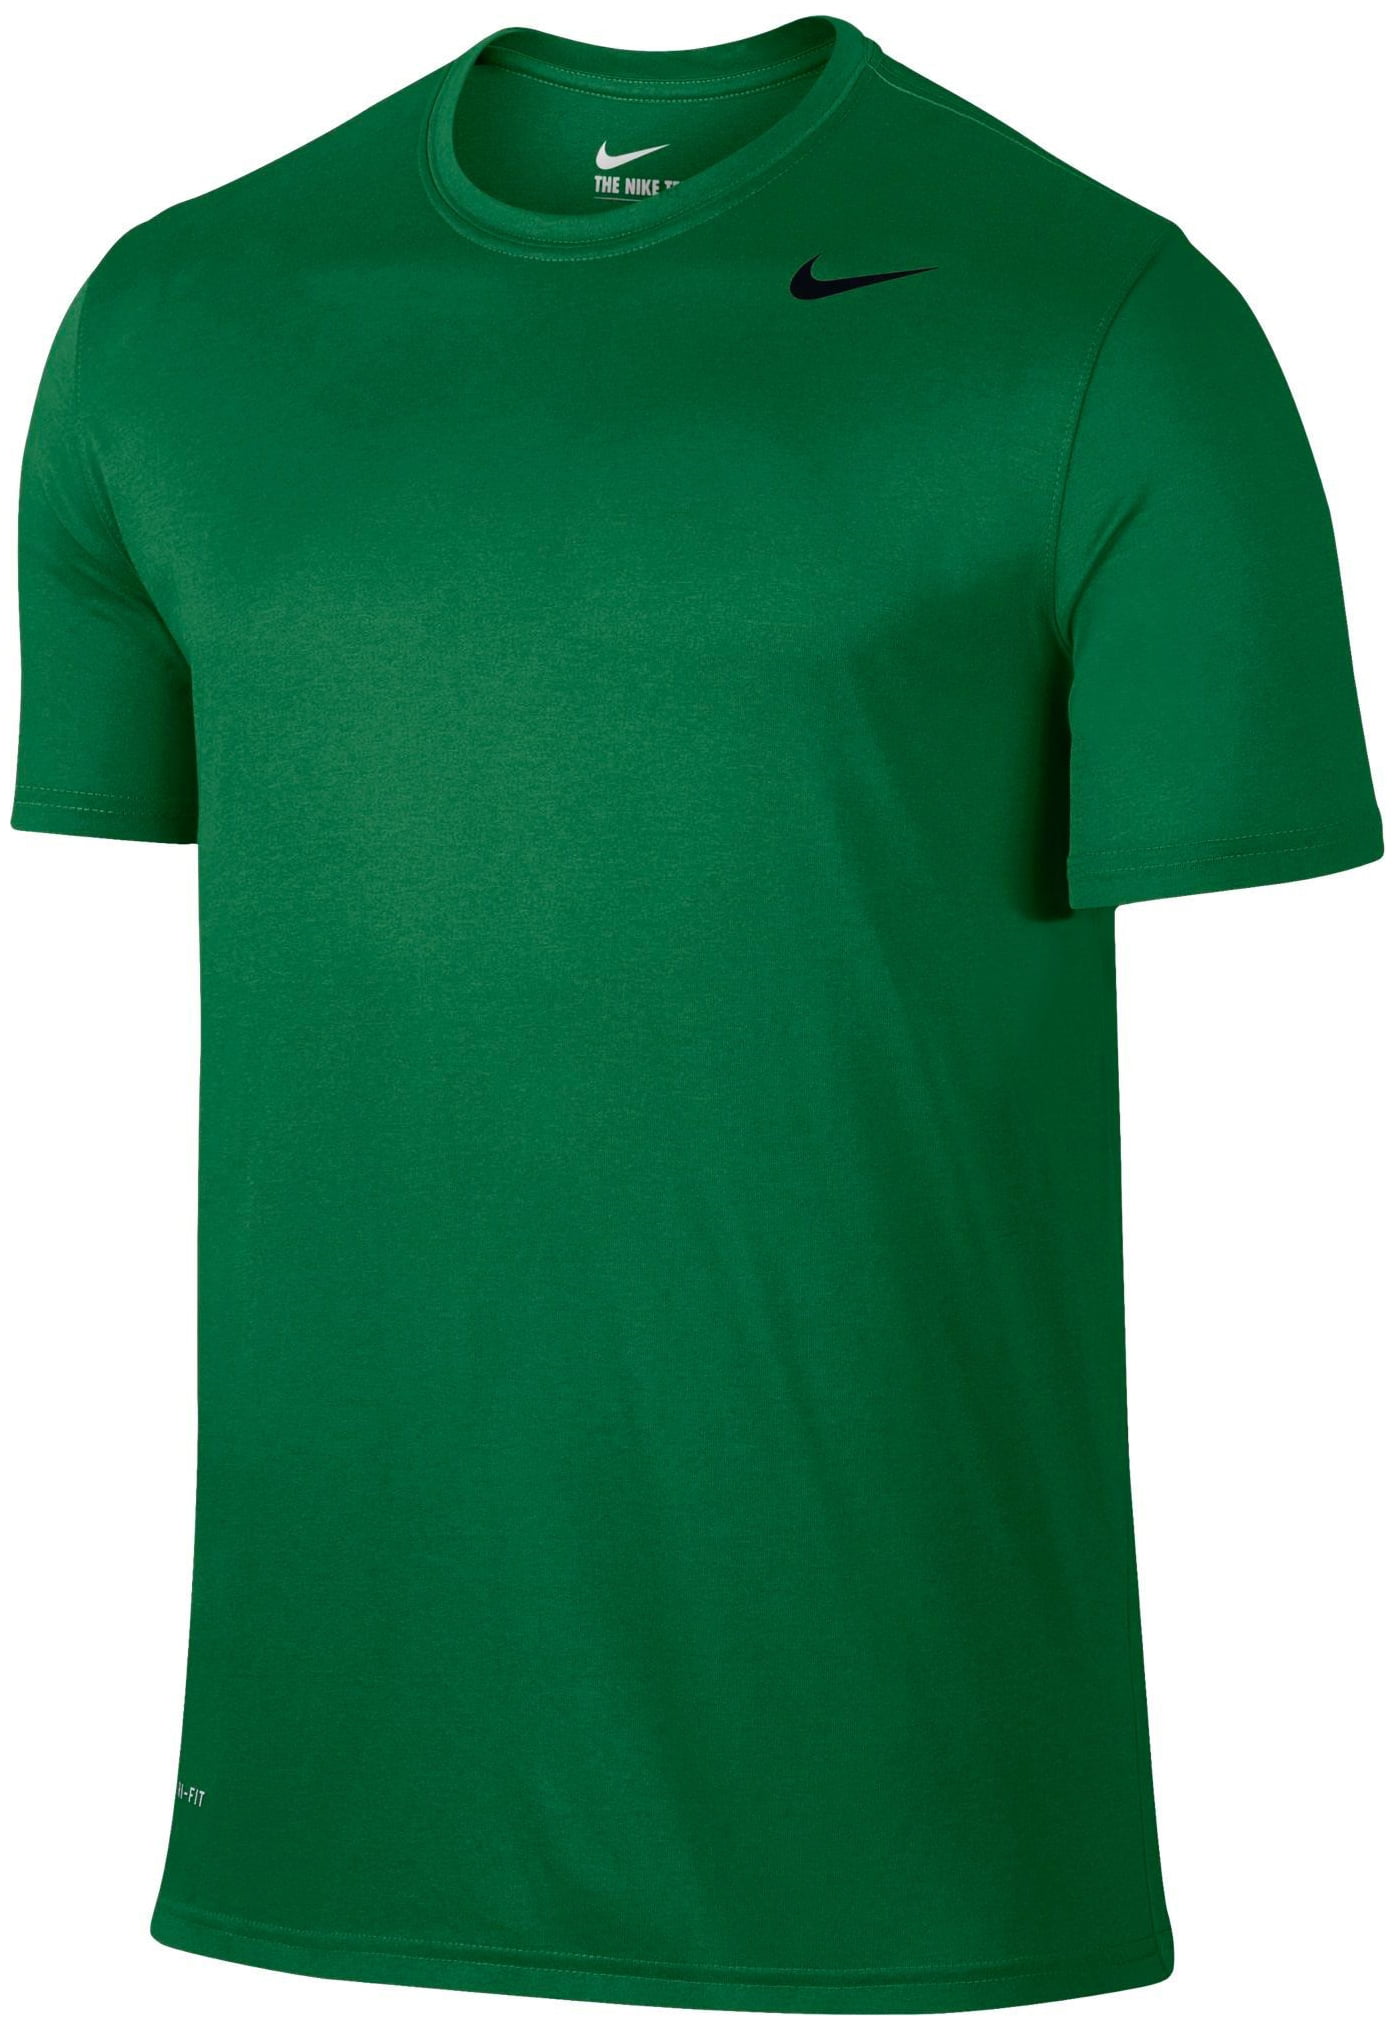 Legend 2.0 T-Shirt - Pine Green 